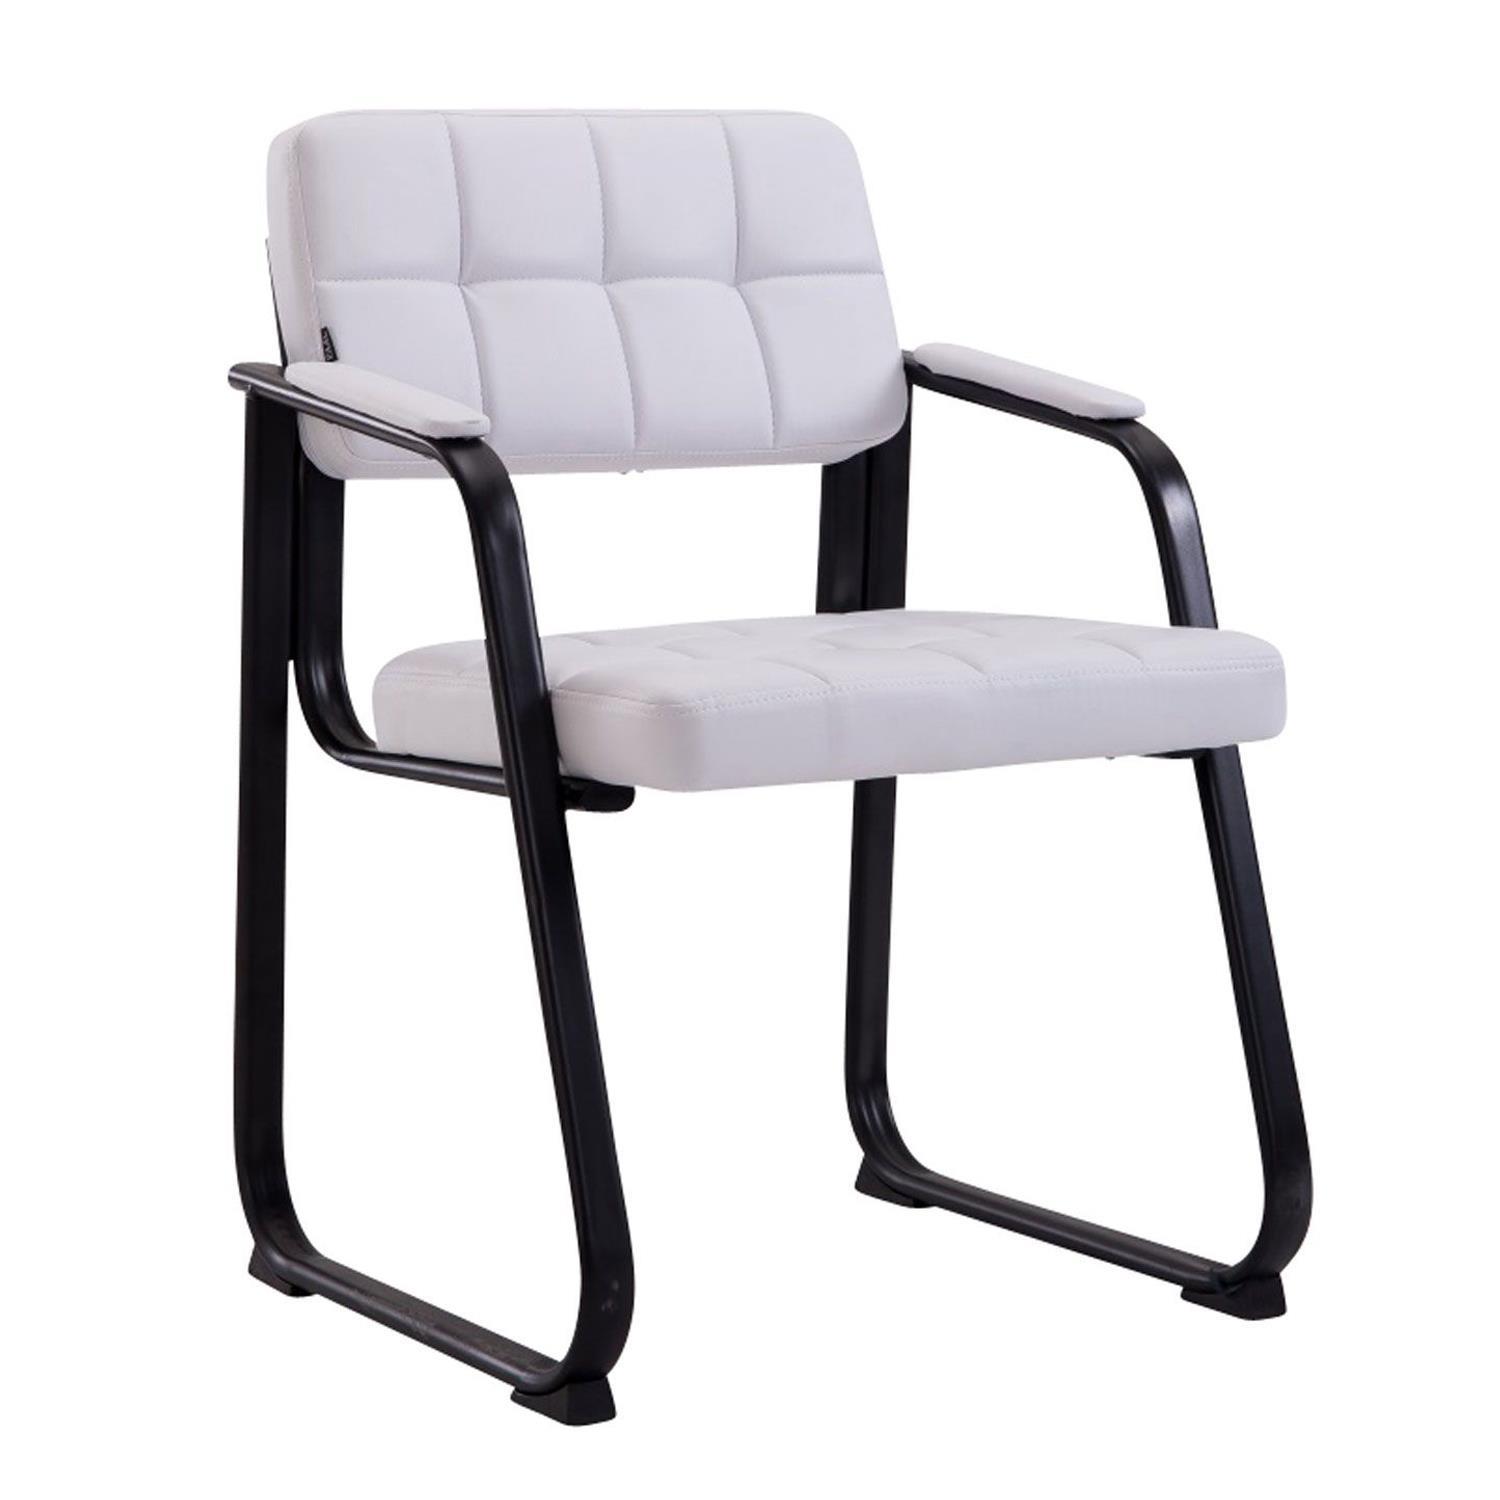 Cadeira de Visita CABANA, Design Moderno, Em Pele, Cor Branco